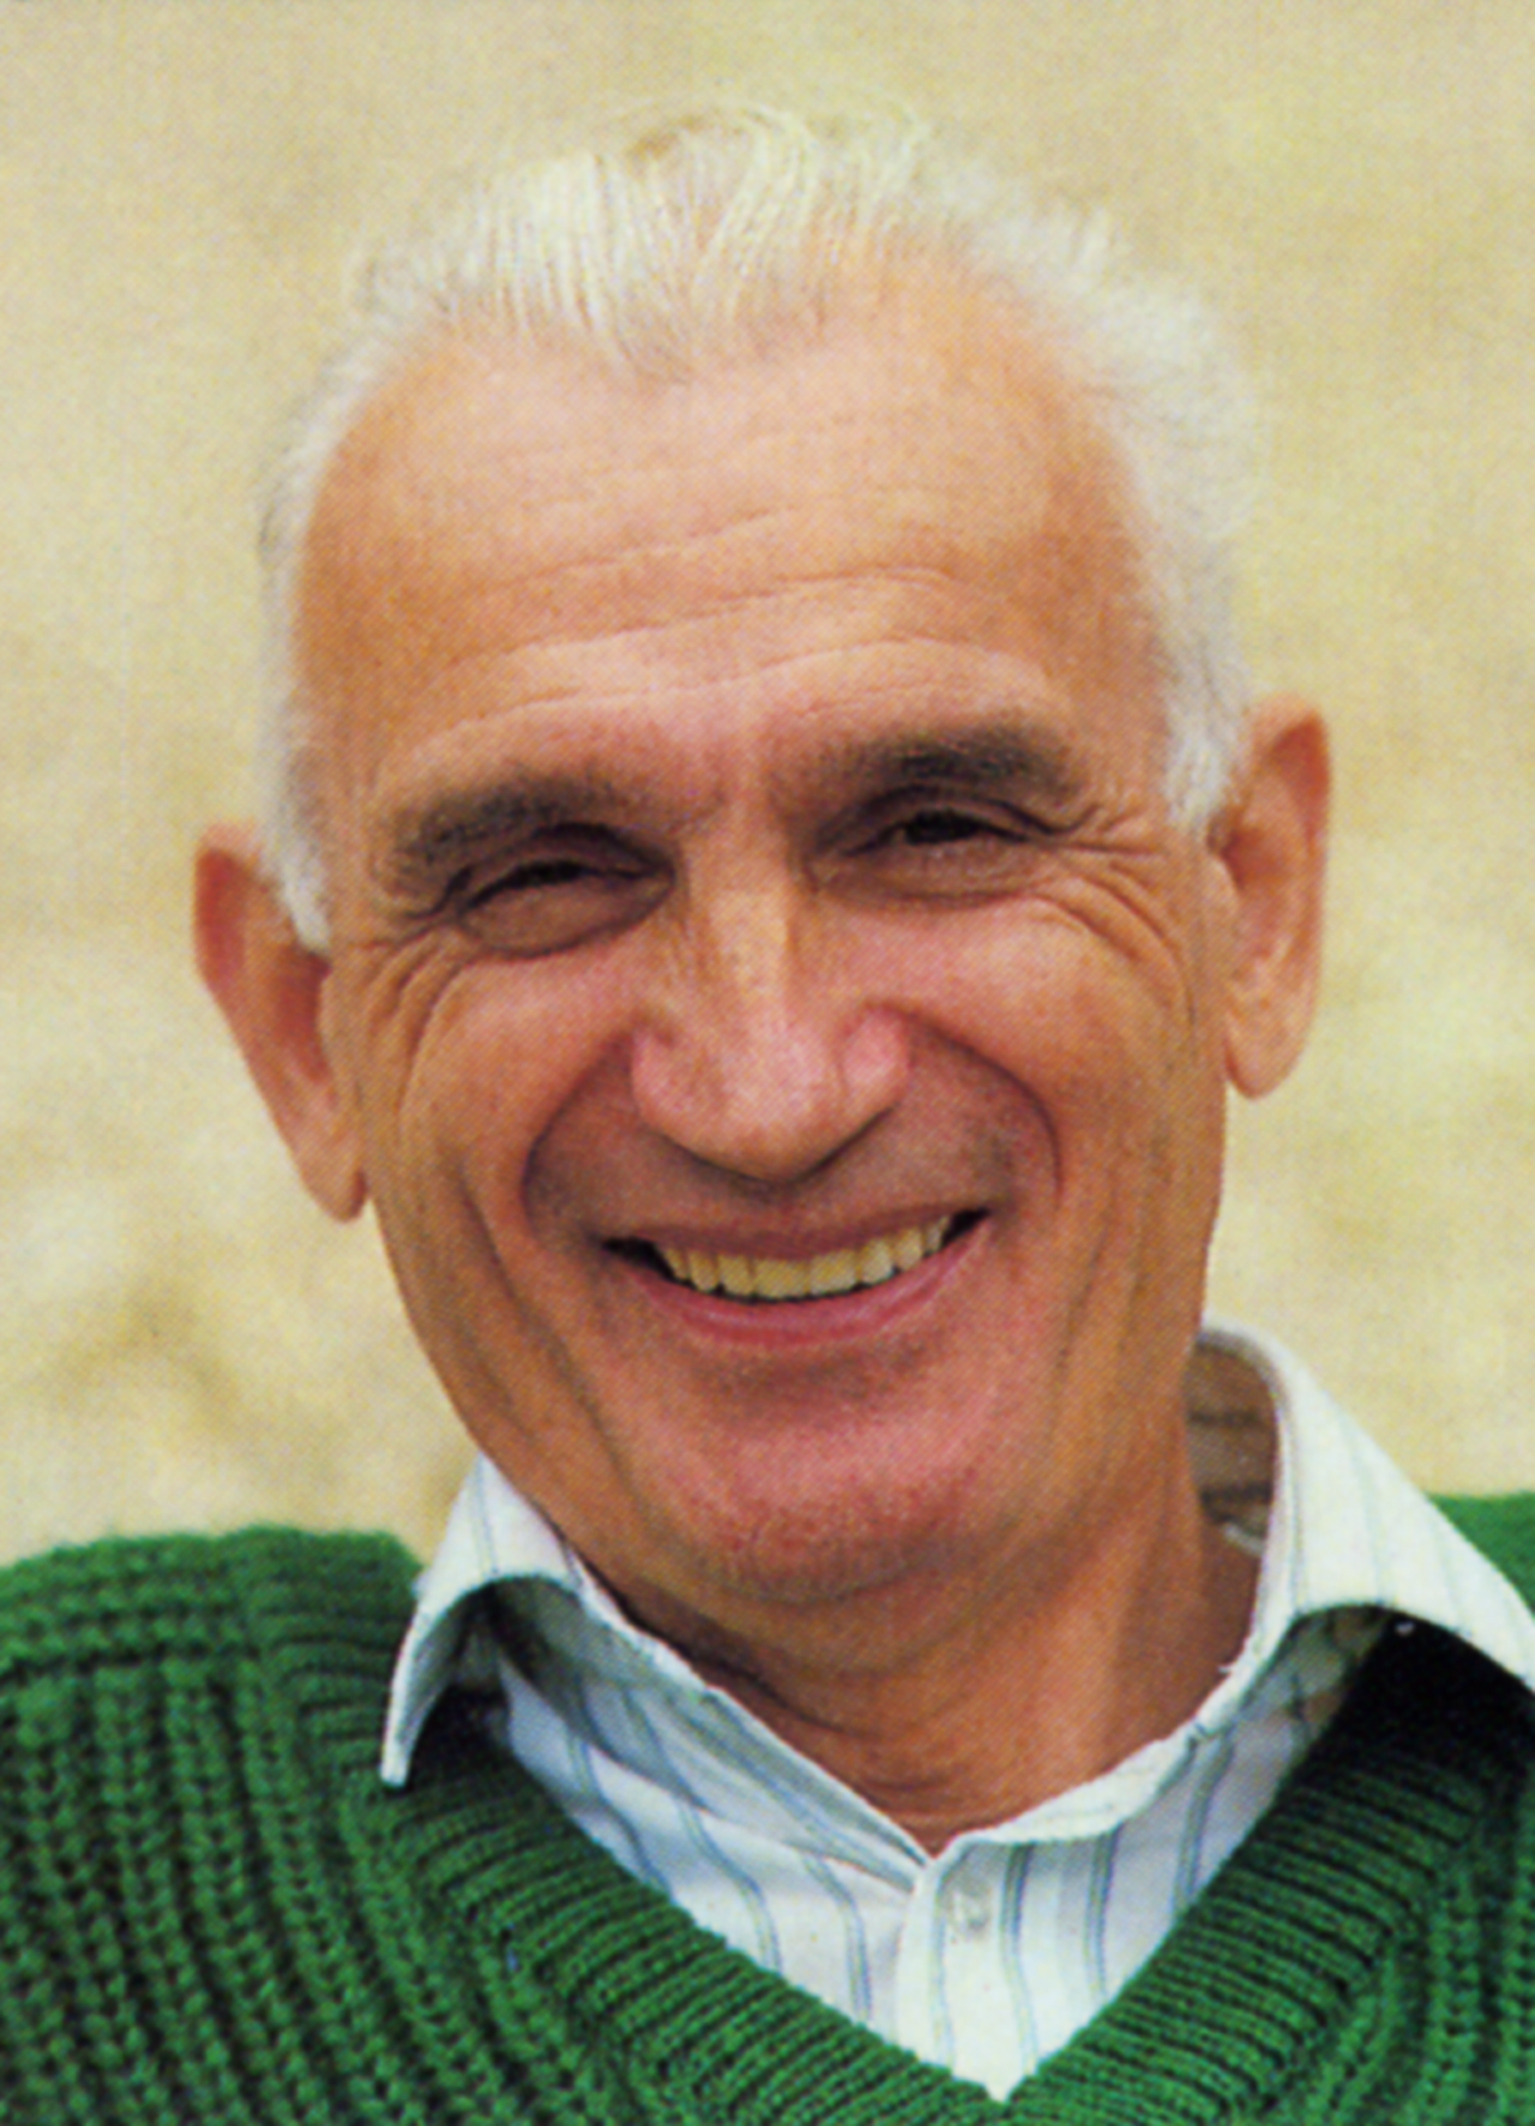 Antoine de La Garanderie in 1988